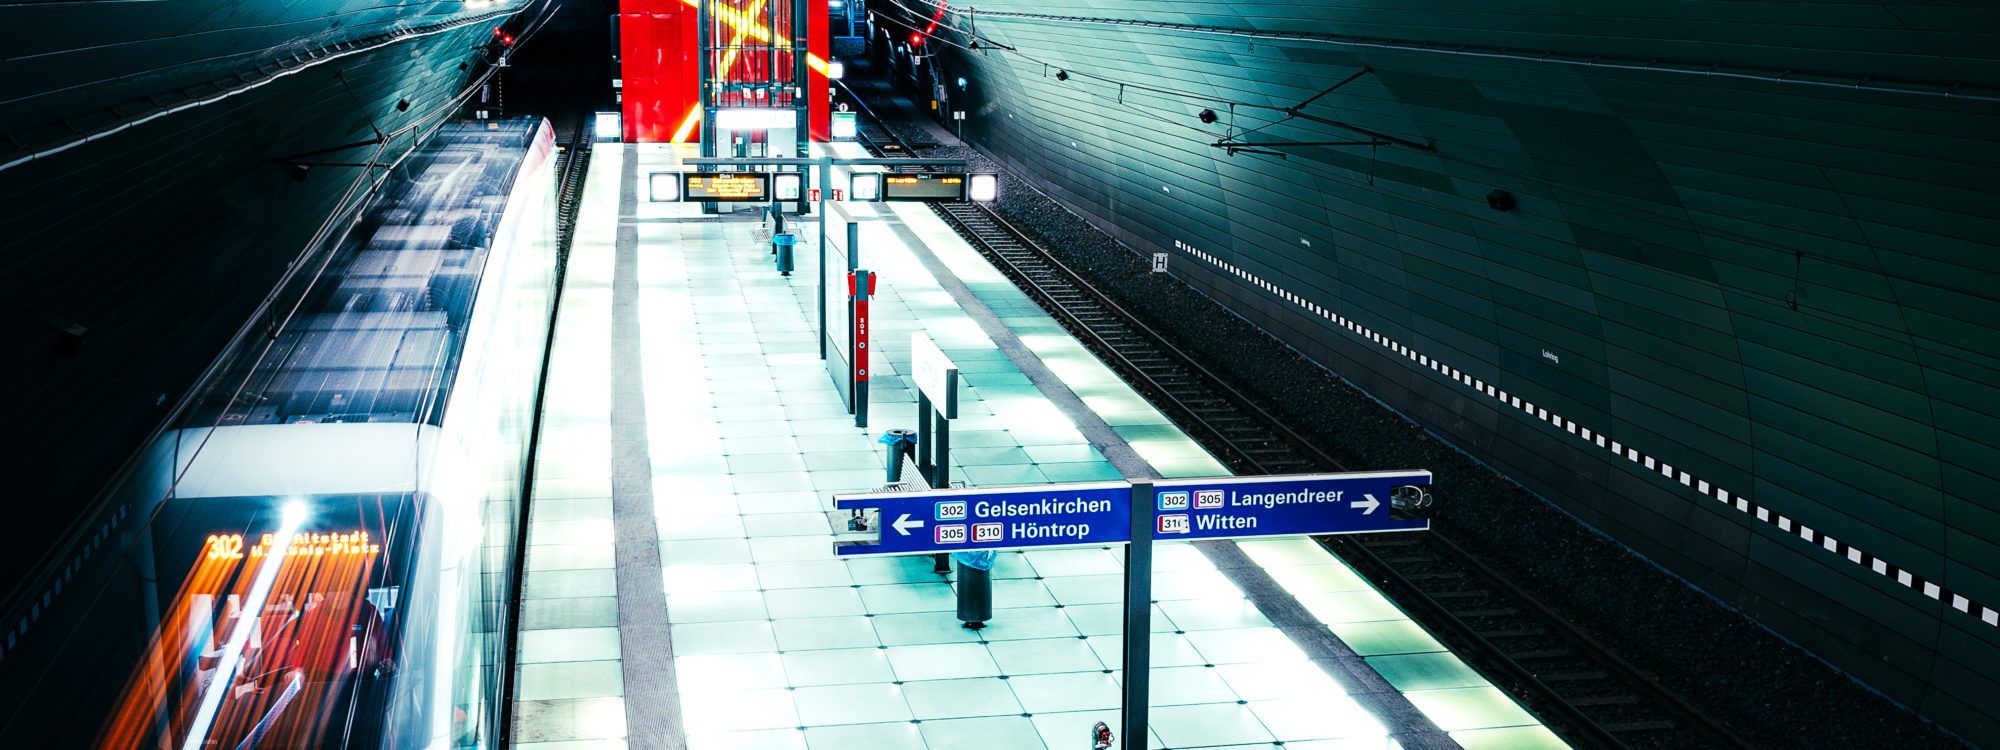 Das Bild zeigt eine U-Bahn-Station in Bochum